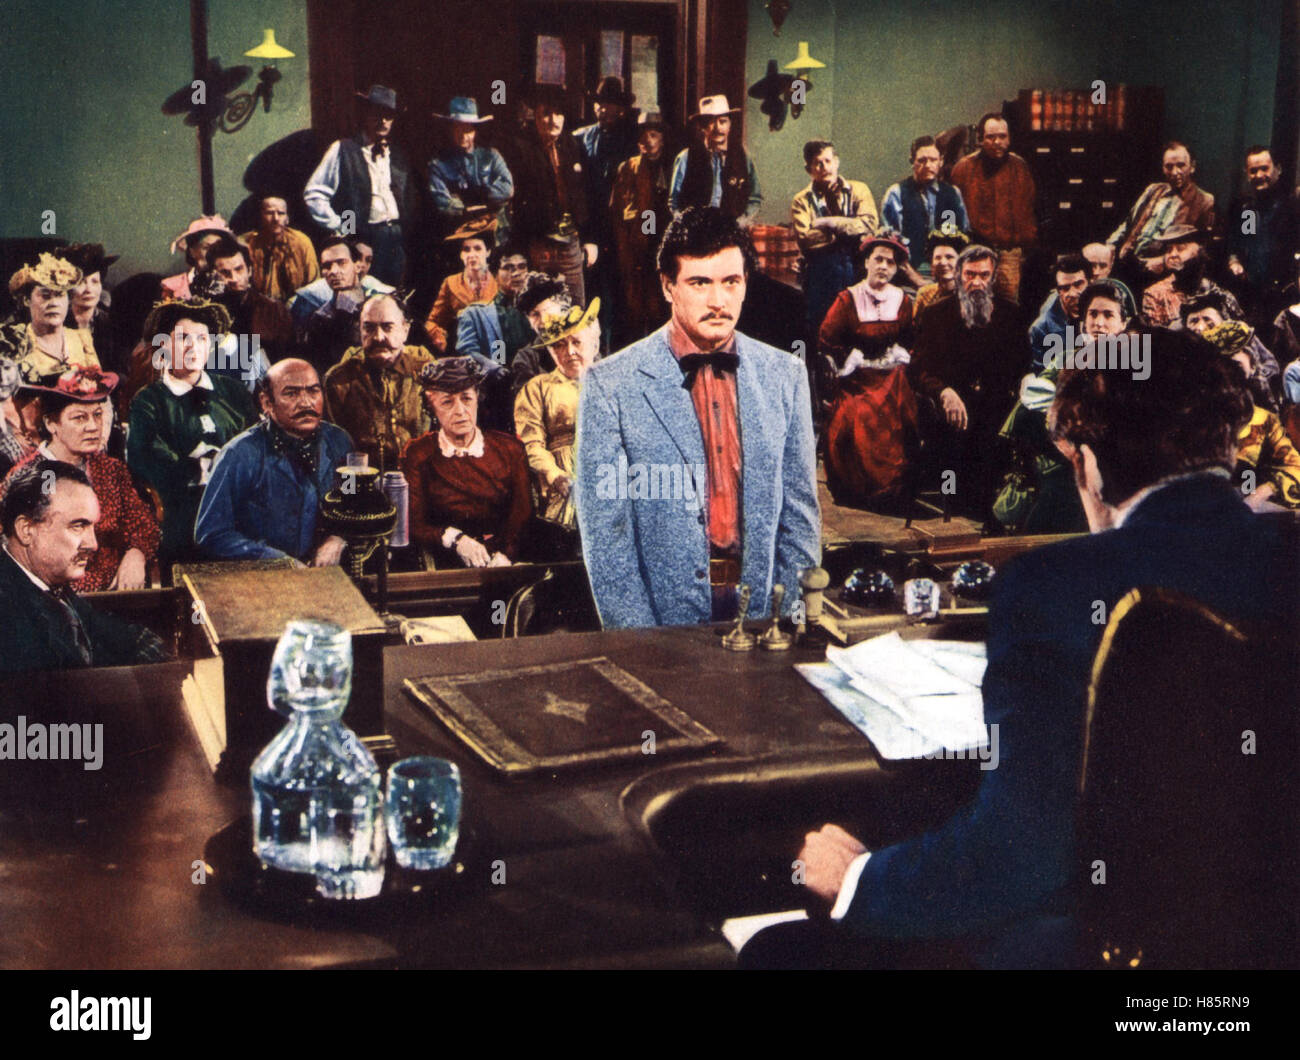 Gefährliches Blut, (L'ILLEGALITÀ RAZZA) USA 1952, Regie: Raoul Walsh, Rock Hudson, Stichwort: Gerichtssaal, Richter, Angeklagter Foto Stock